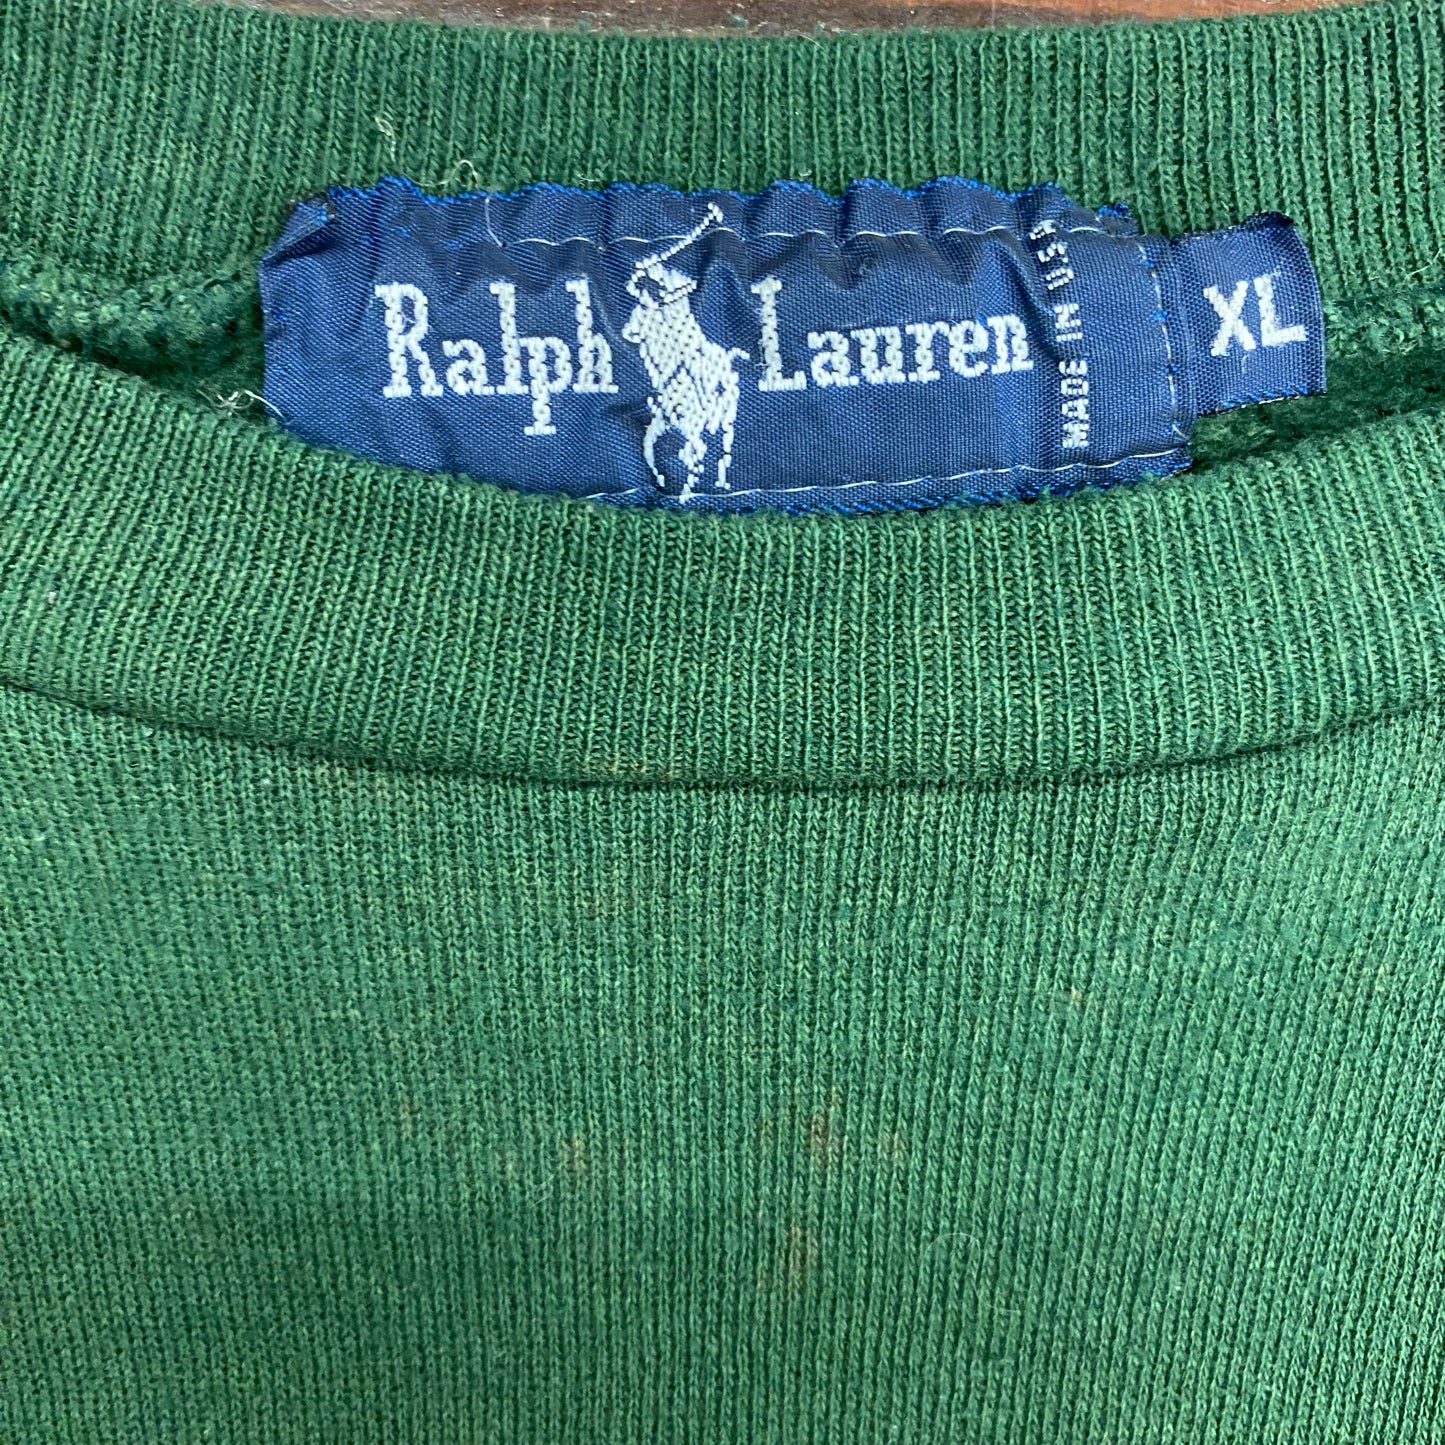 1990s Polo Ralph Lauren Crewneck Sweatshirt - Size XL (Fits Large)